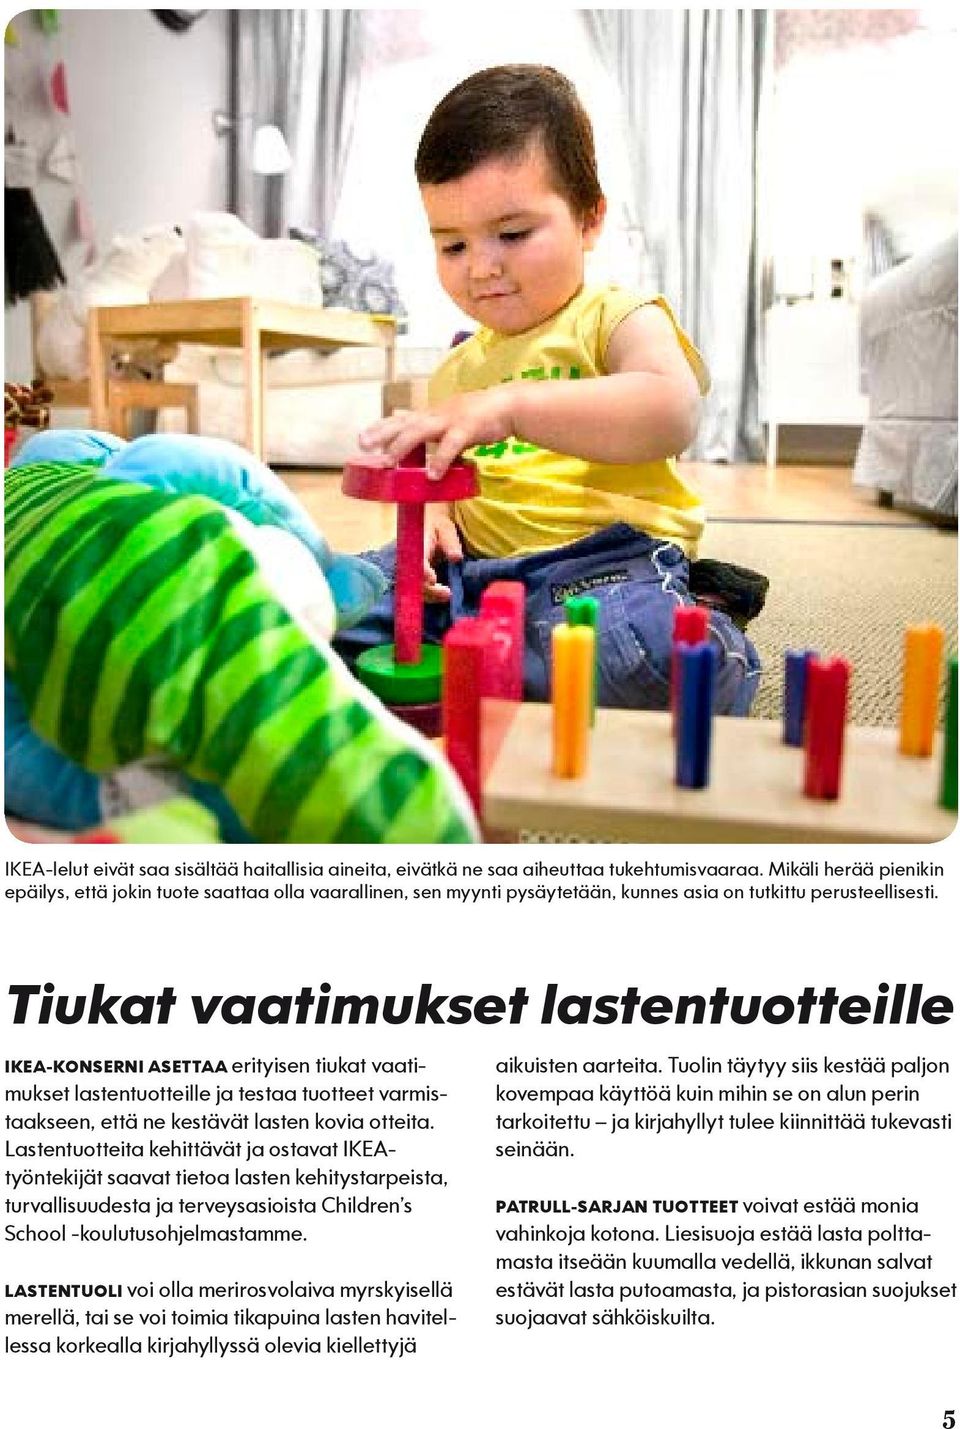 Tiukat vaatimukset lastentuotteille IKEA-KONSERNI ASETTAA erityisen tiukat vaatimukset lastentuotteille ja testaa tuotteet varmistaakseen, että ne kestävät lasten kovia otteita.